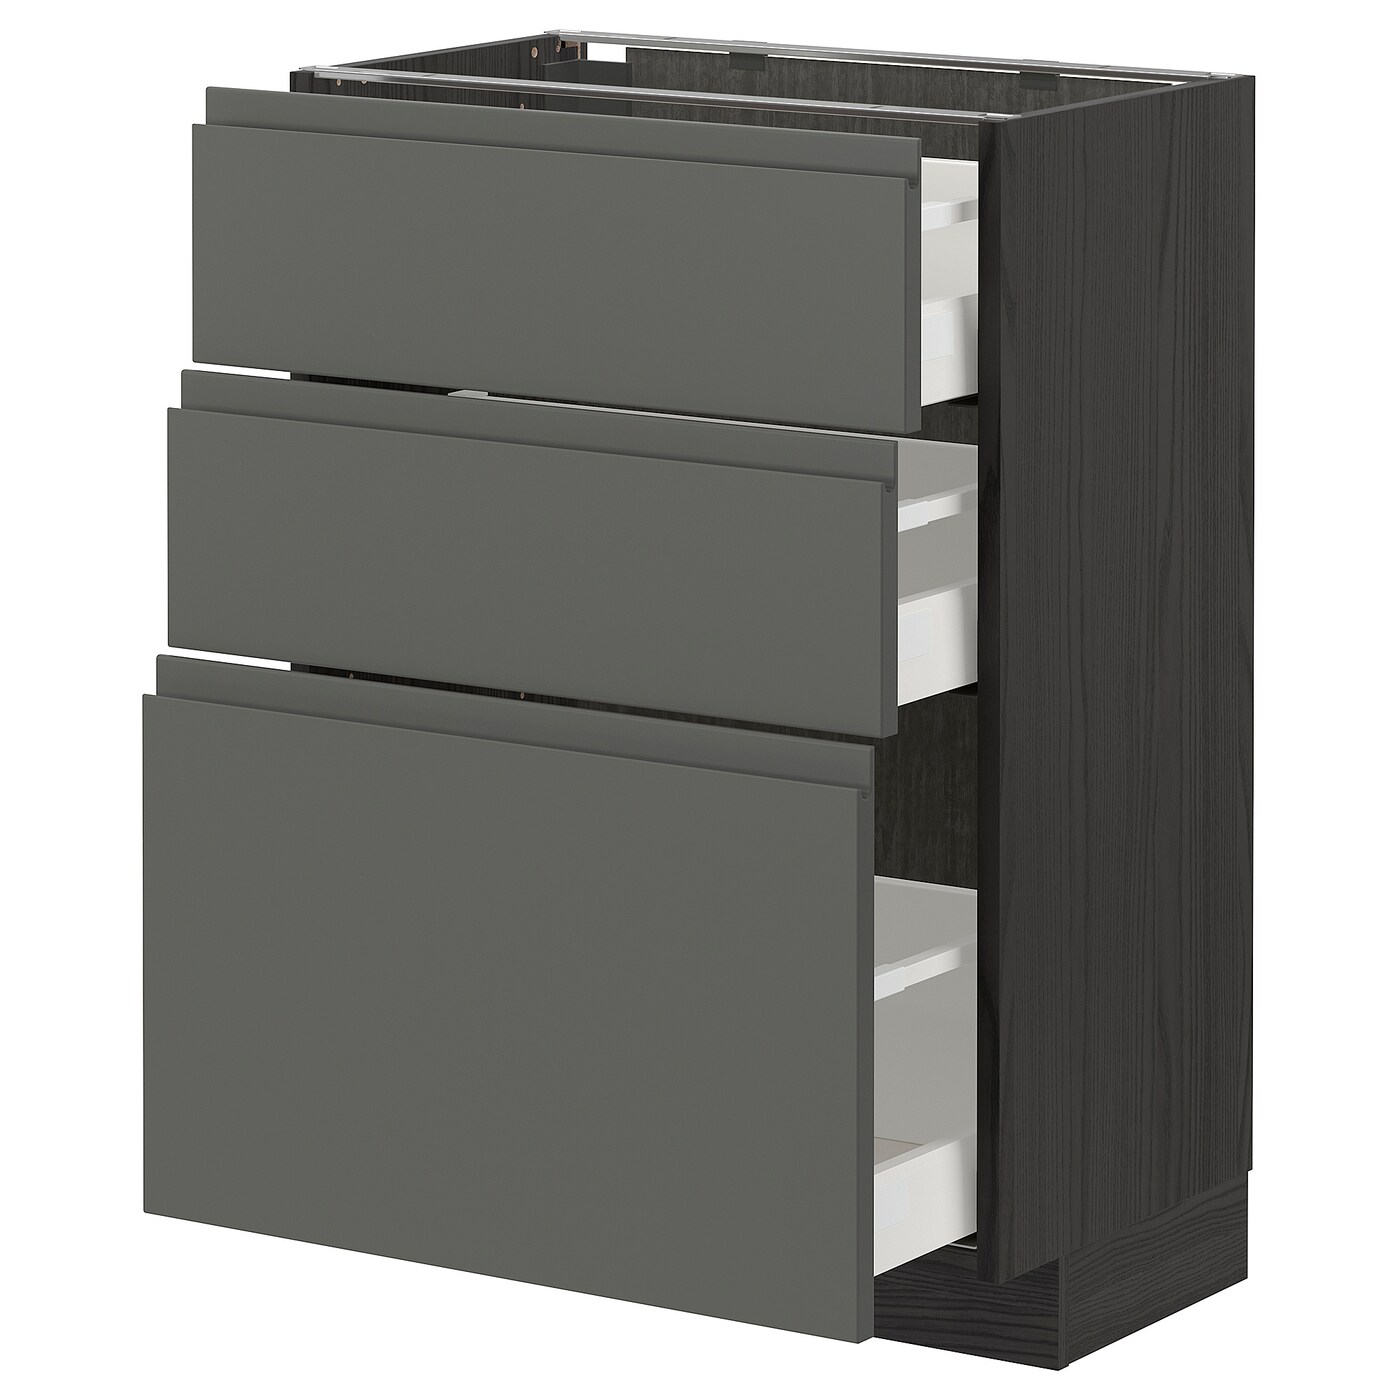 Напольный шкаф - IKEA METOD MAXIMERA, 88x39x60см, темно-серый/серый, МЕТОД МАКСИМЕРА ИКЕА